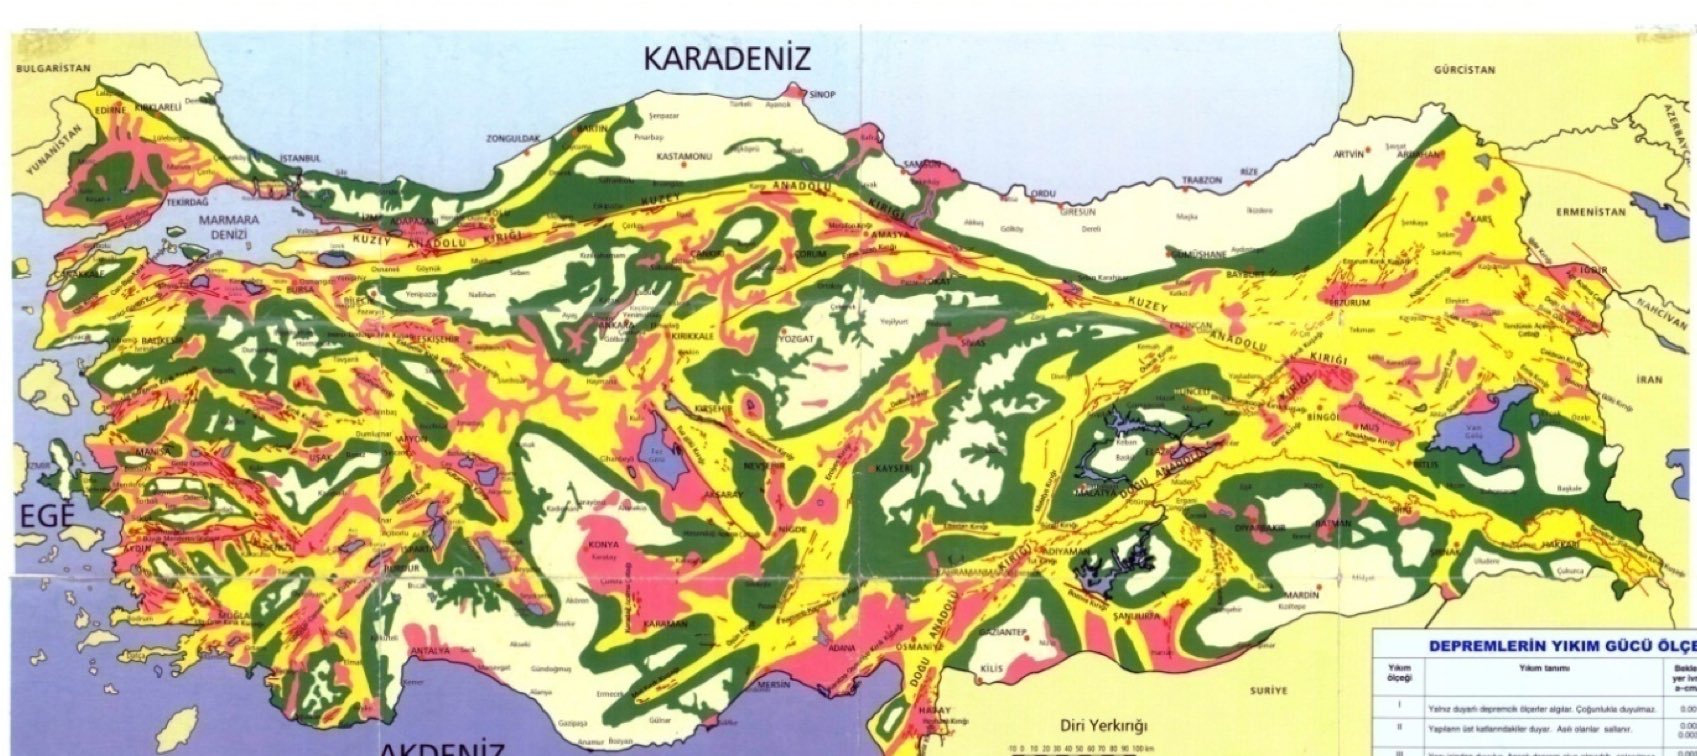 Prof. Dr. Övgün Ahmet Ercan Deprem haritası paylaştı